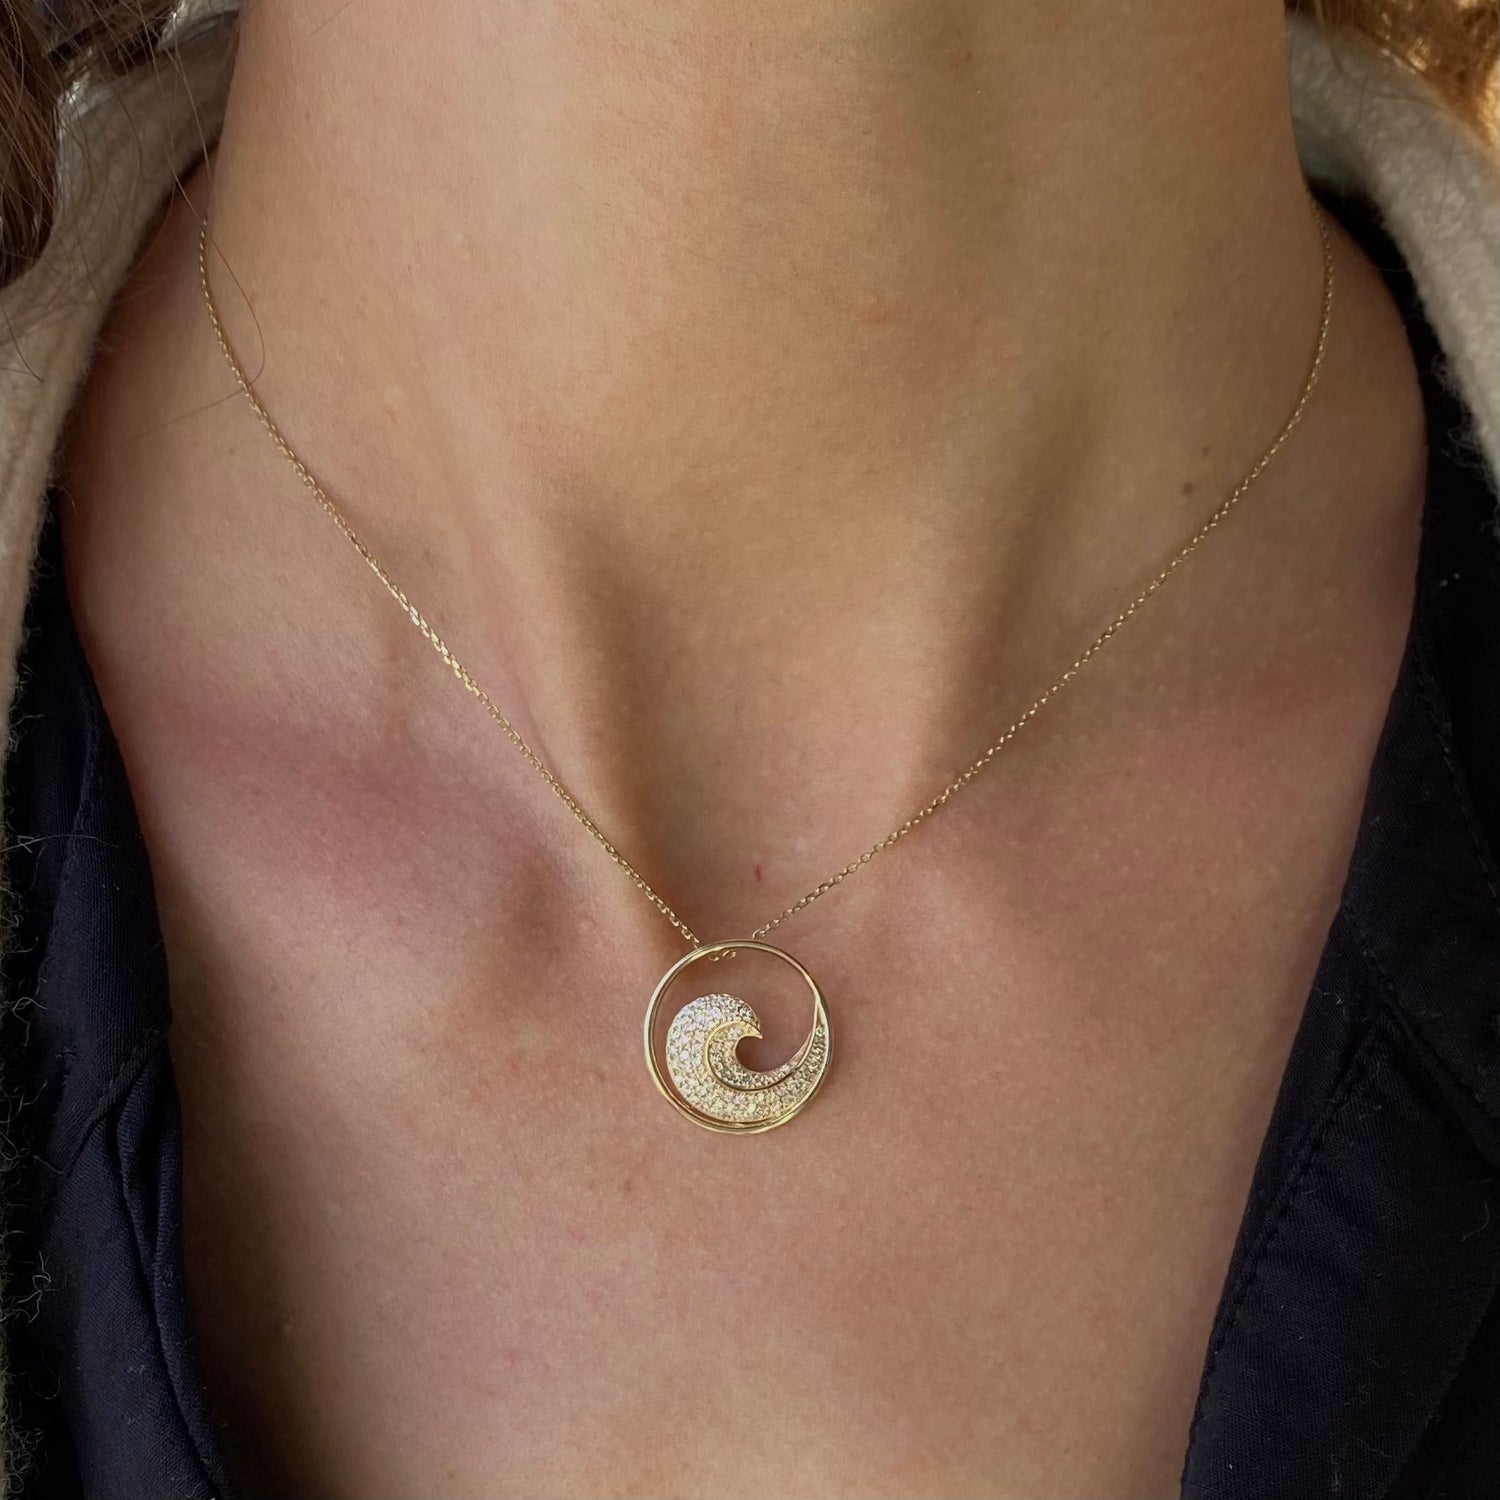 Spiral Necklace | Mociun Mini / White Diamond